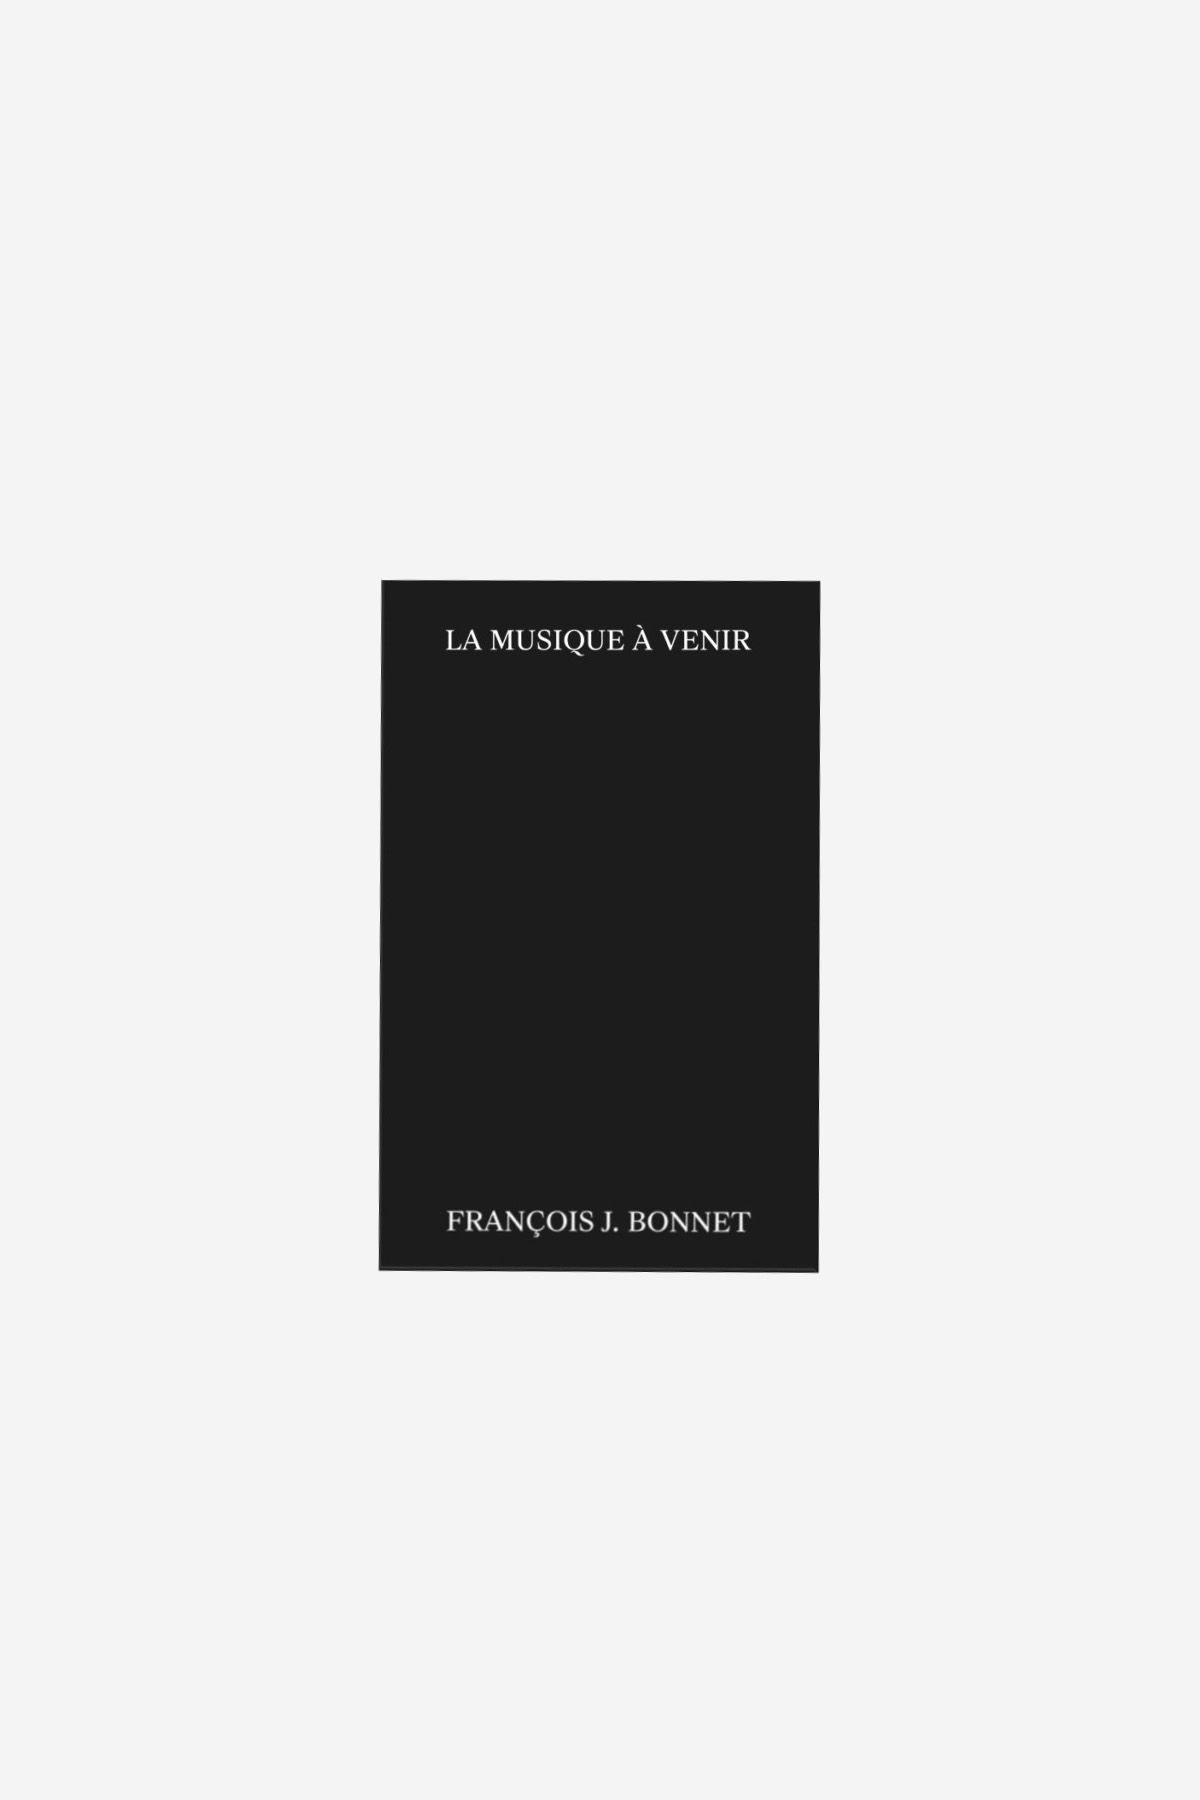 François J. Bonnet 'La Musique à venir' (french edition)